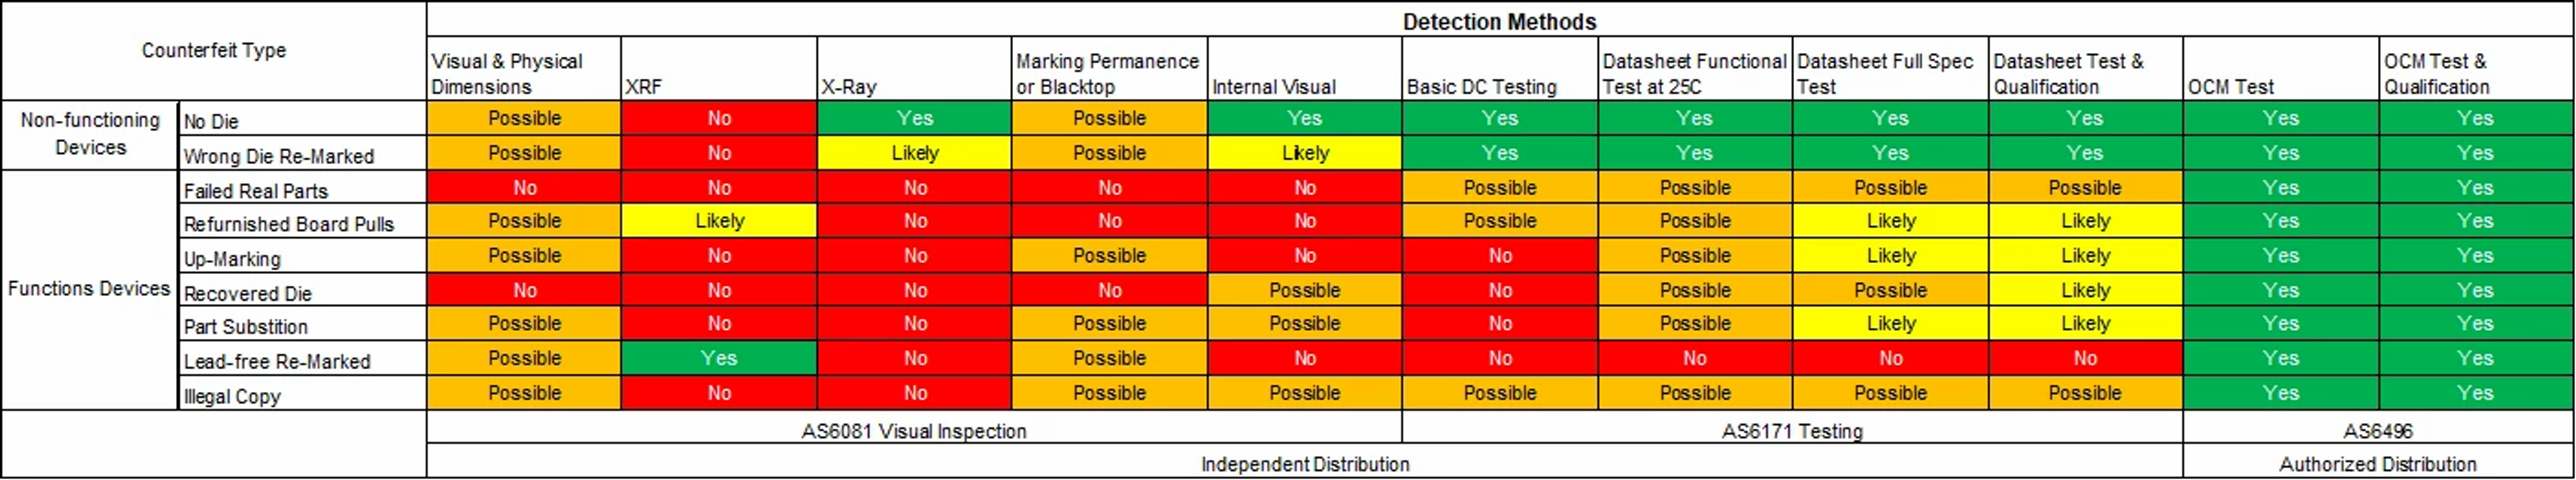 Detection Methods